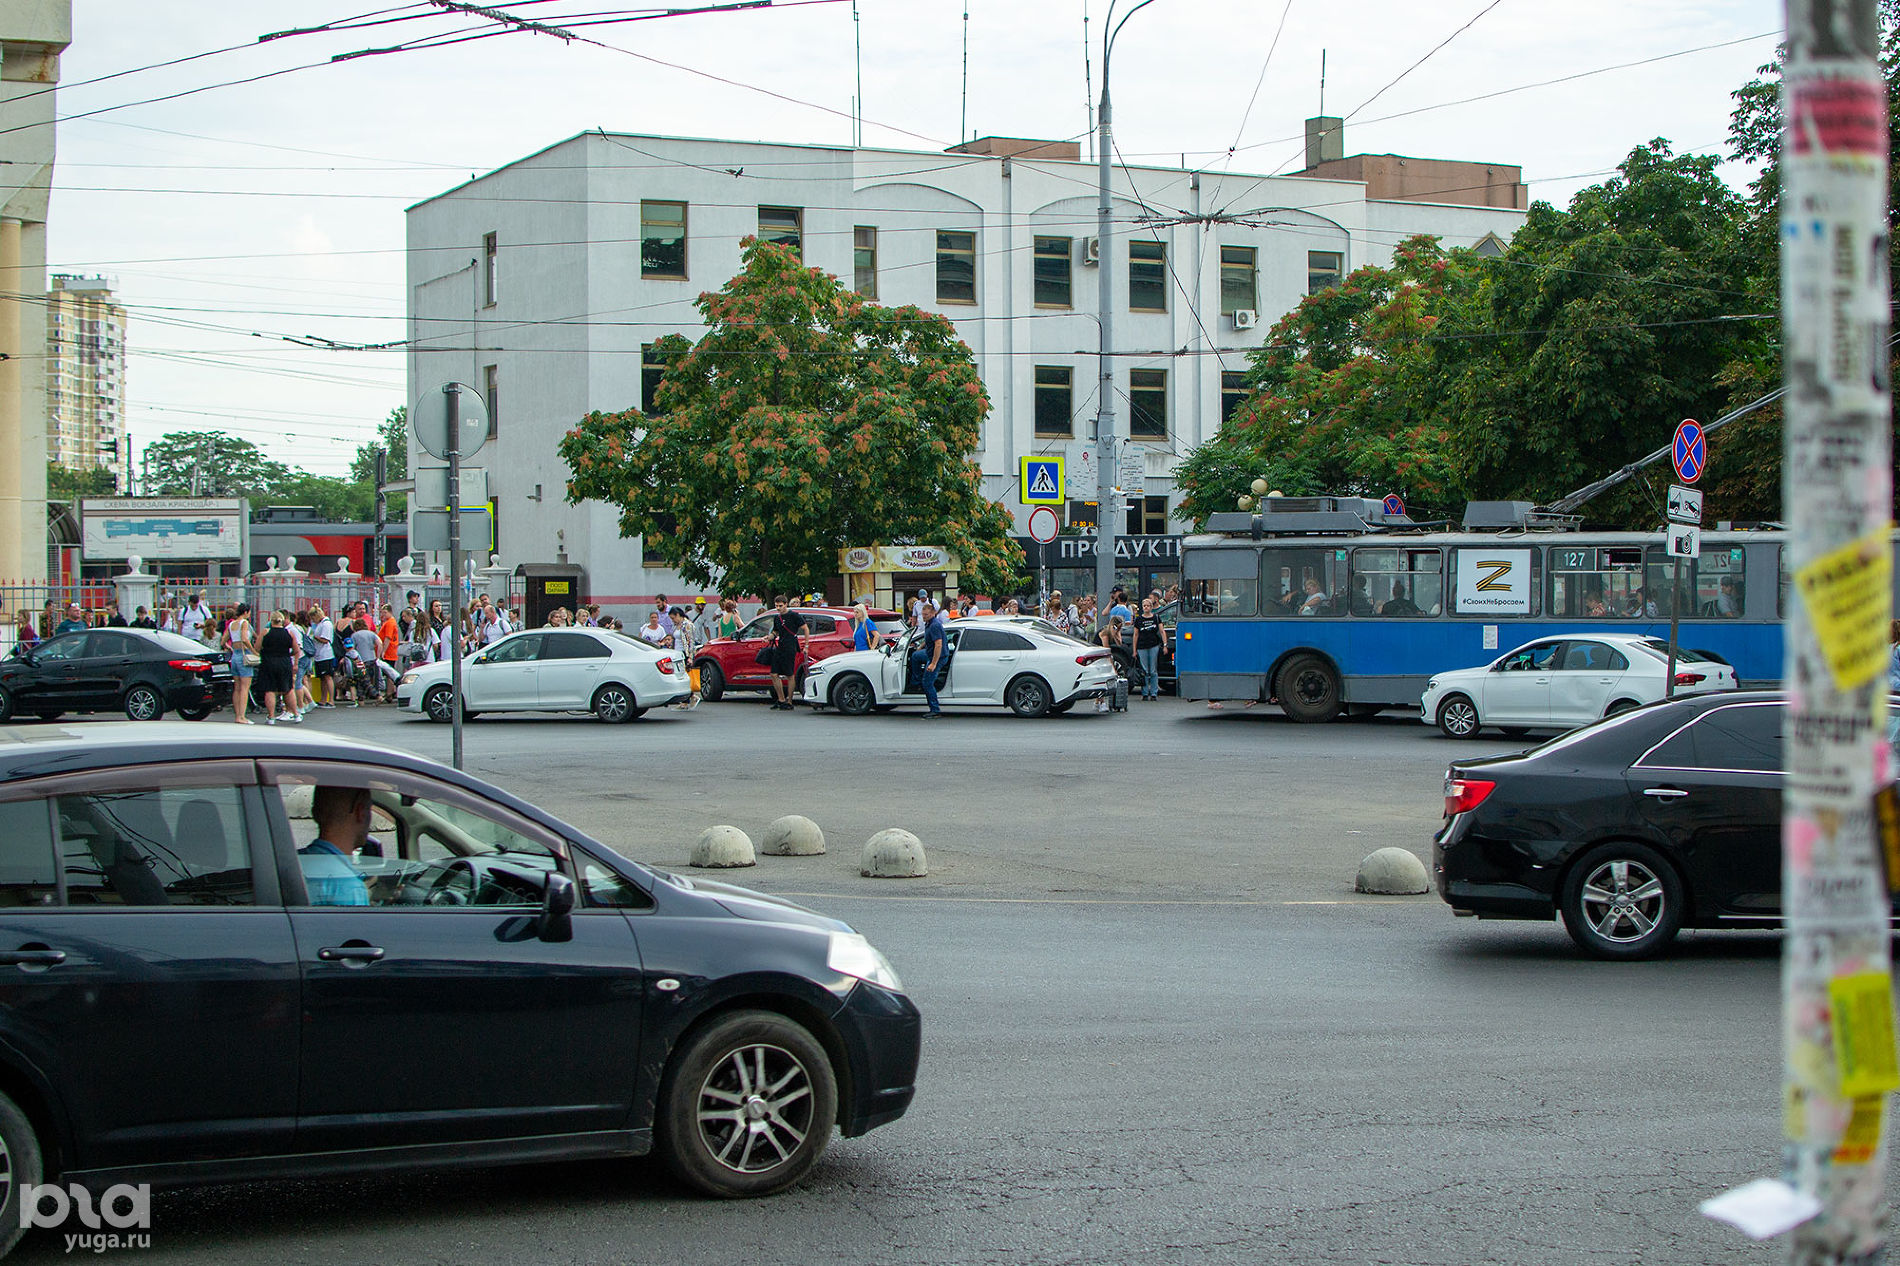 Место для остановки машин у троллейбусного кольца, здесь же большинство людей выходят из ж/д вокзала © Фото Александра Гончаренко, Юга.ру